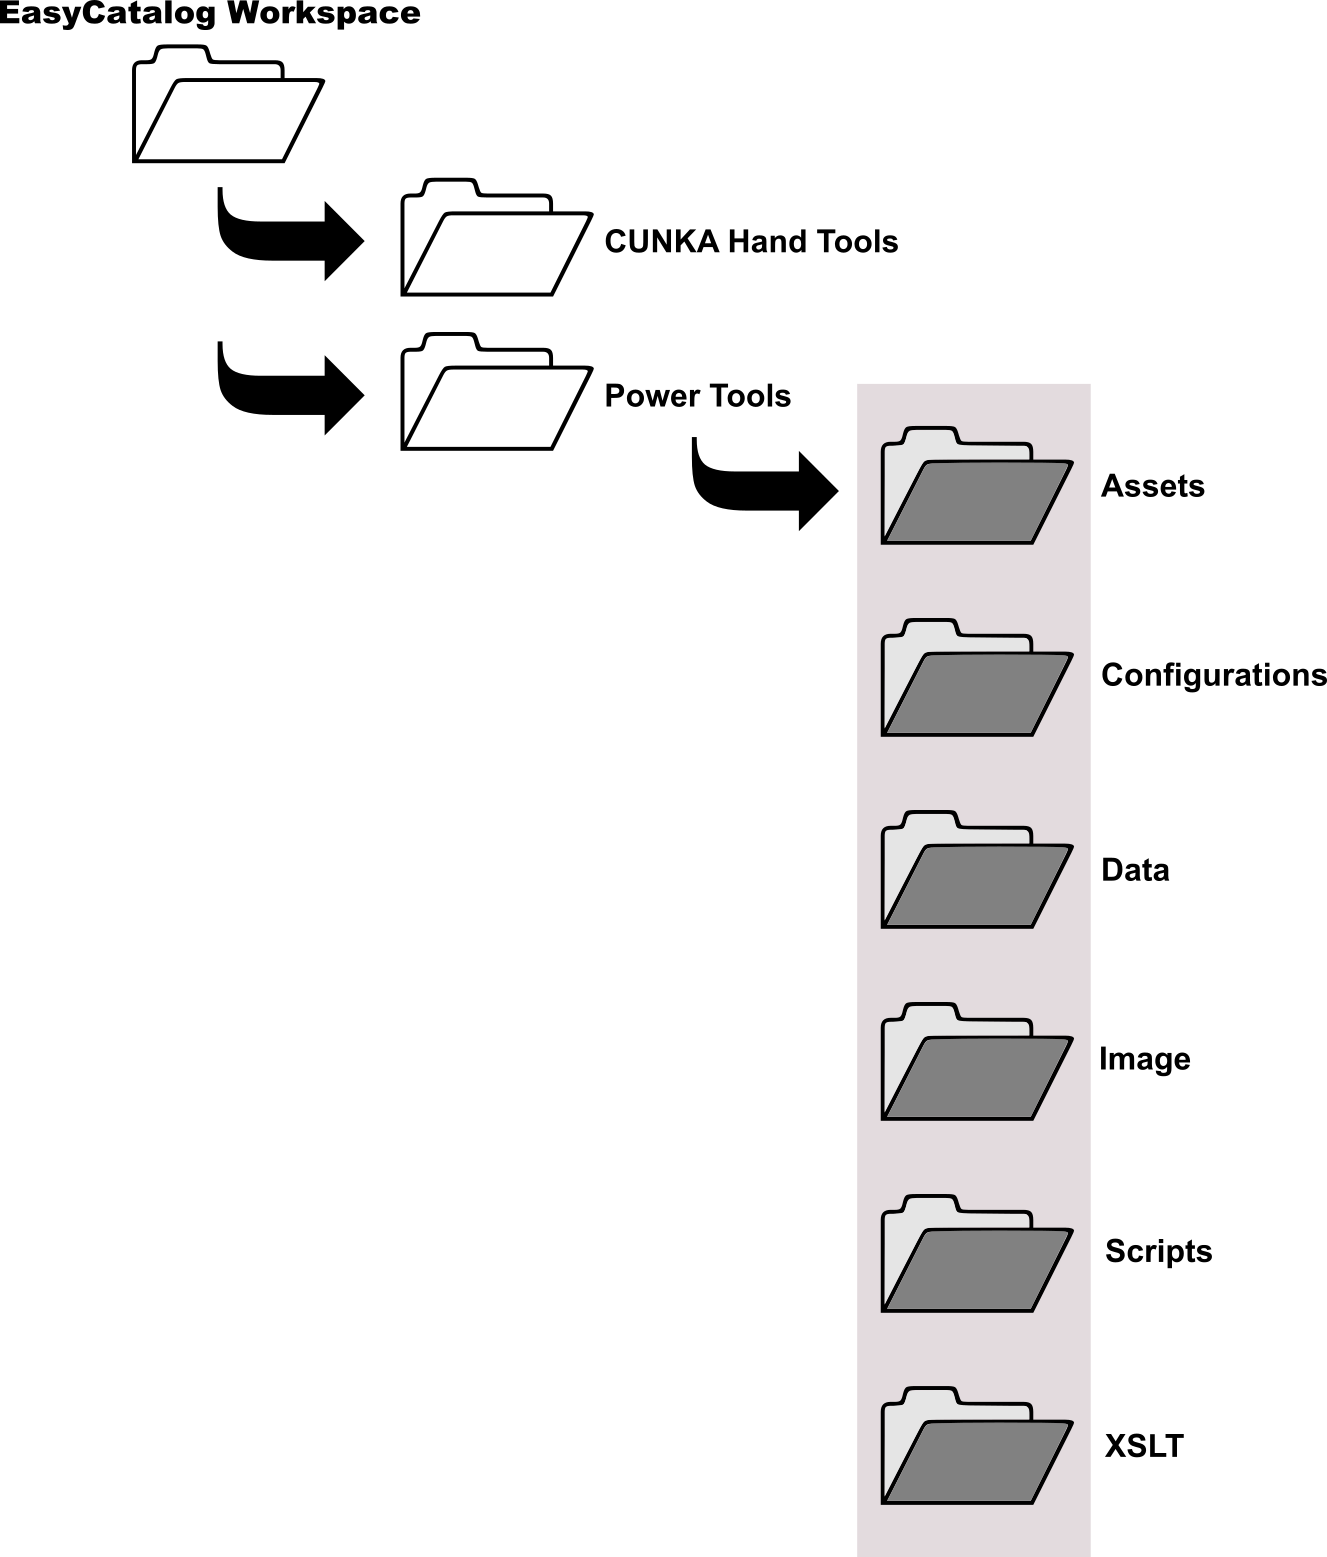 FolderStructure